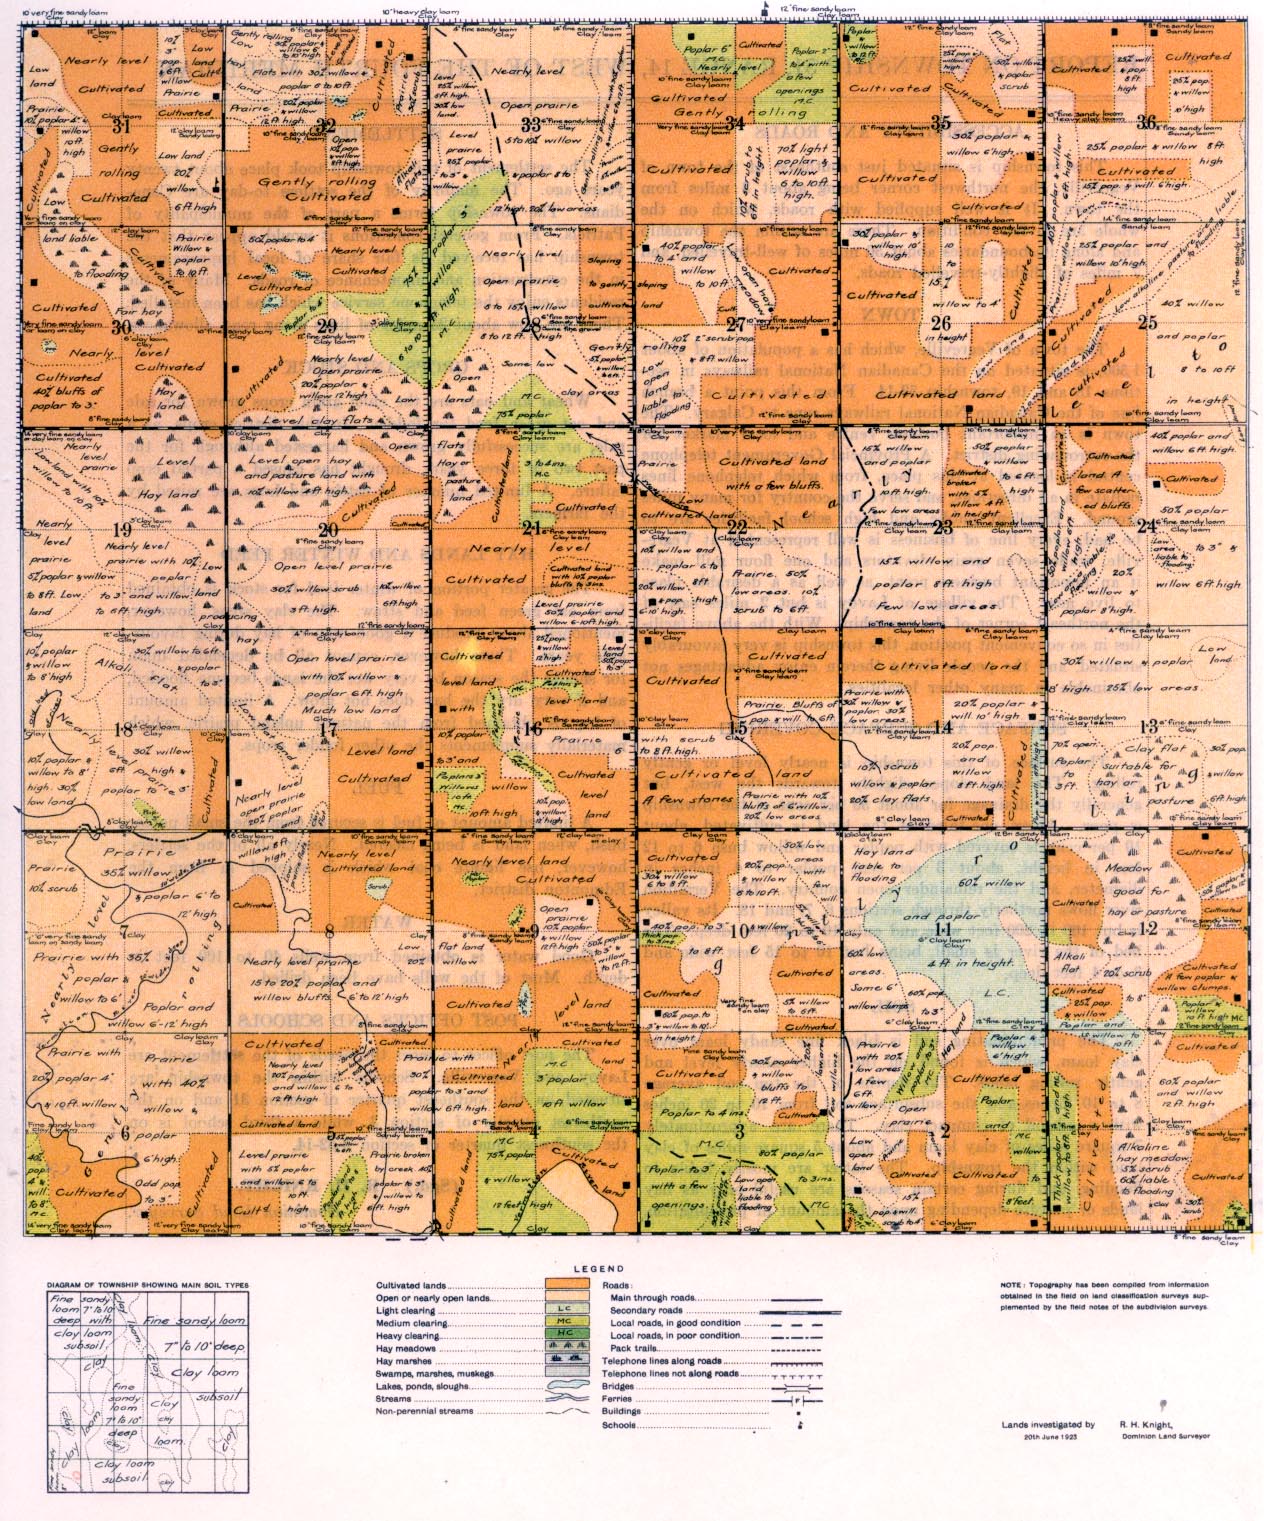 Township 51 Range 14 w 4th 1924